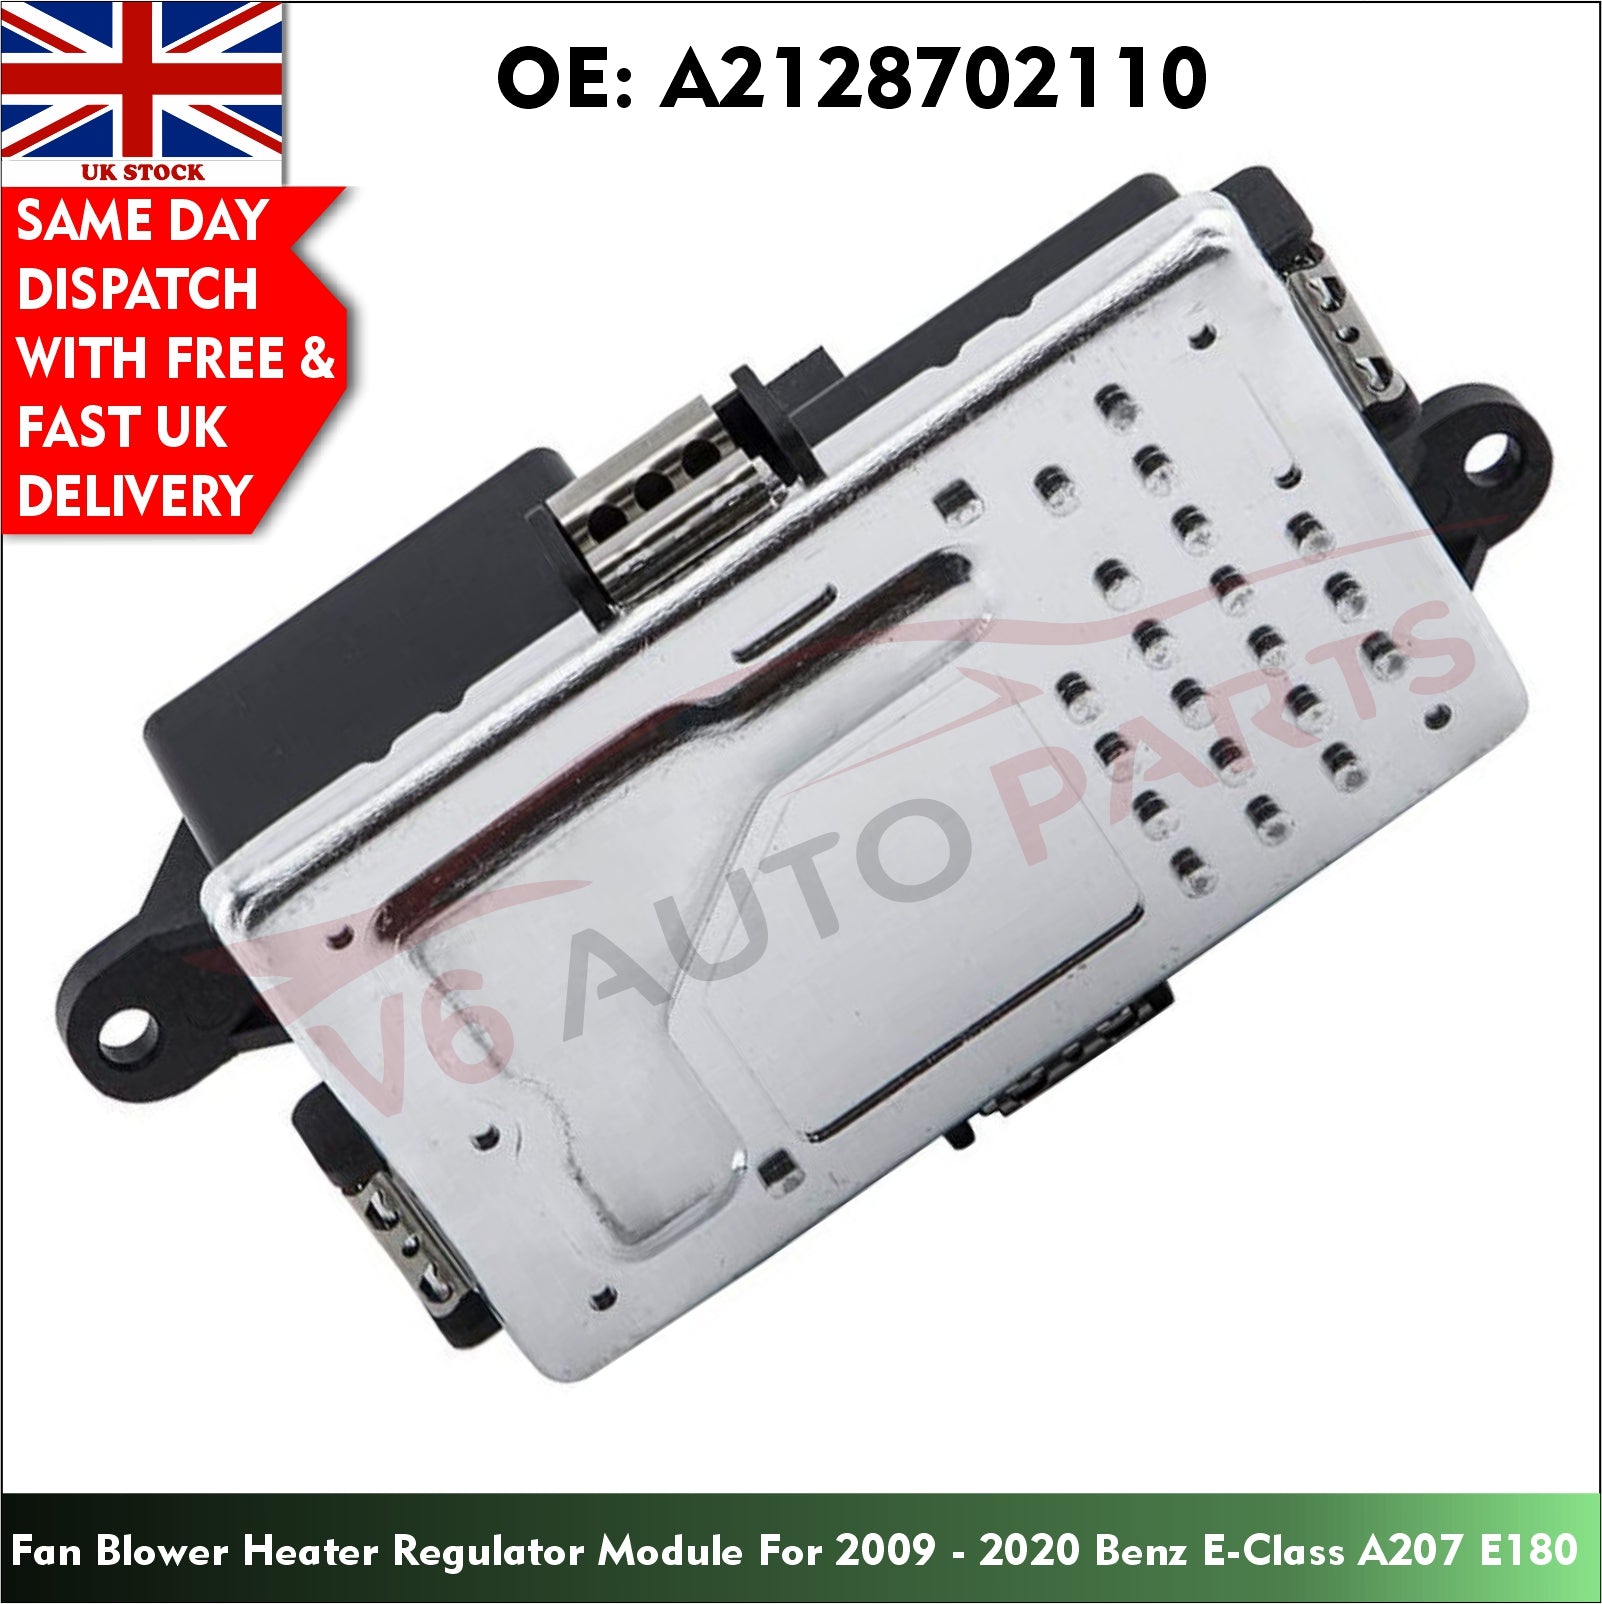 A2128702110- Fan Blower Heater Resistor Regulator For 2009 - 2020 BENZ E-Class A207 E180